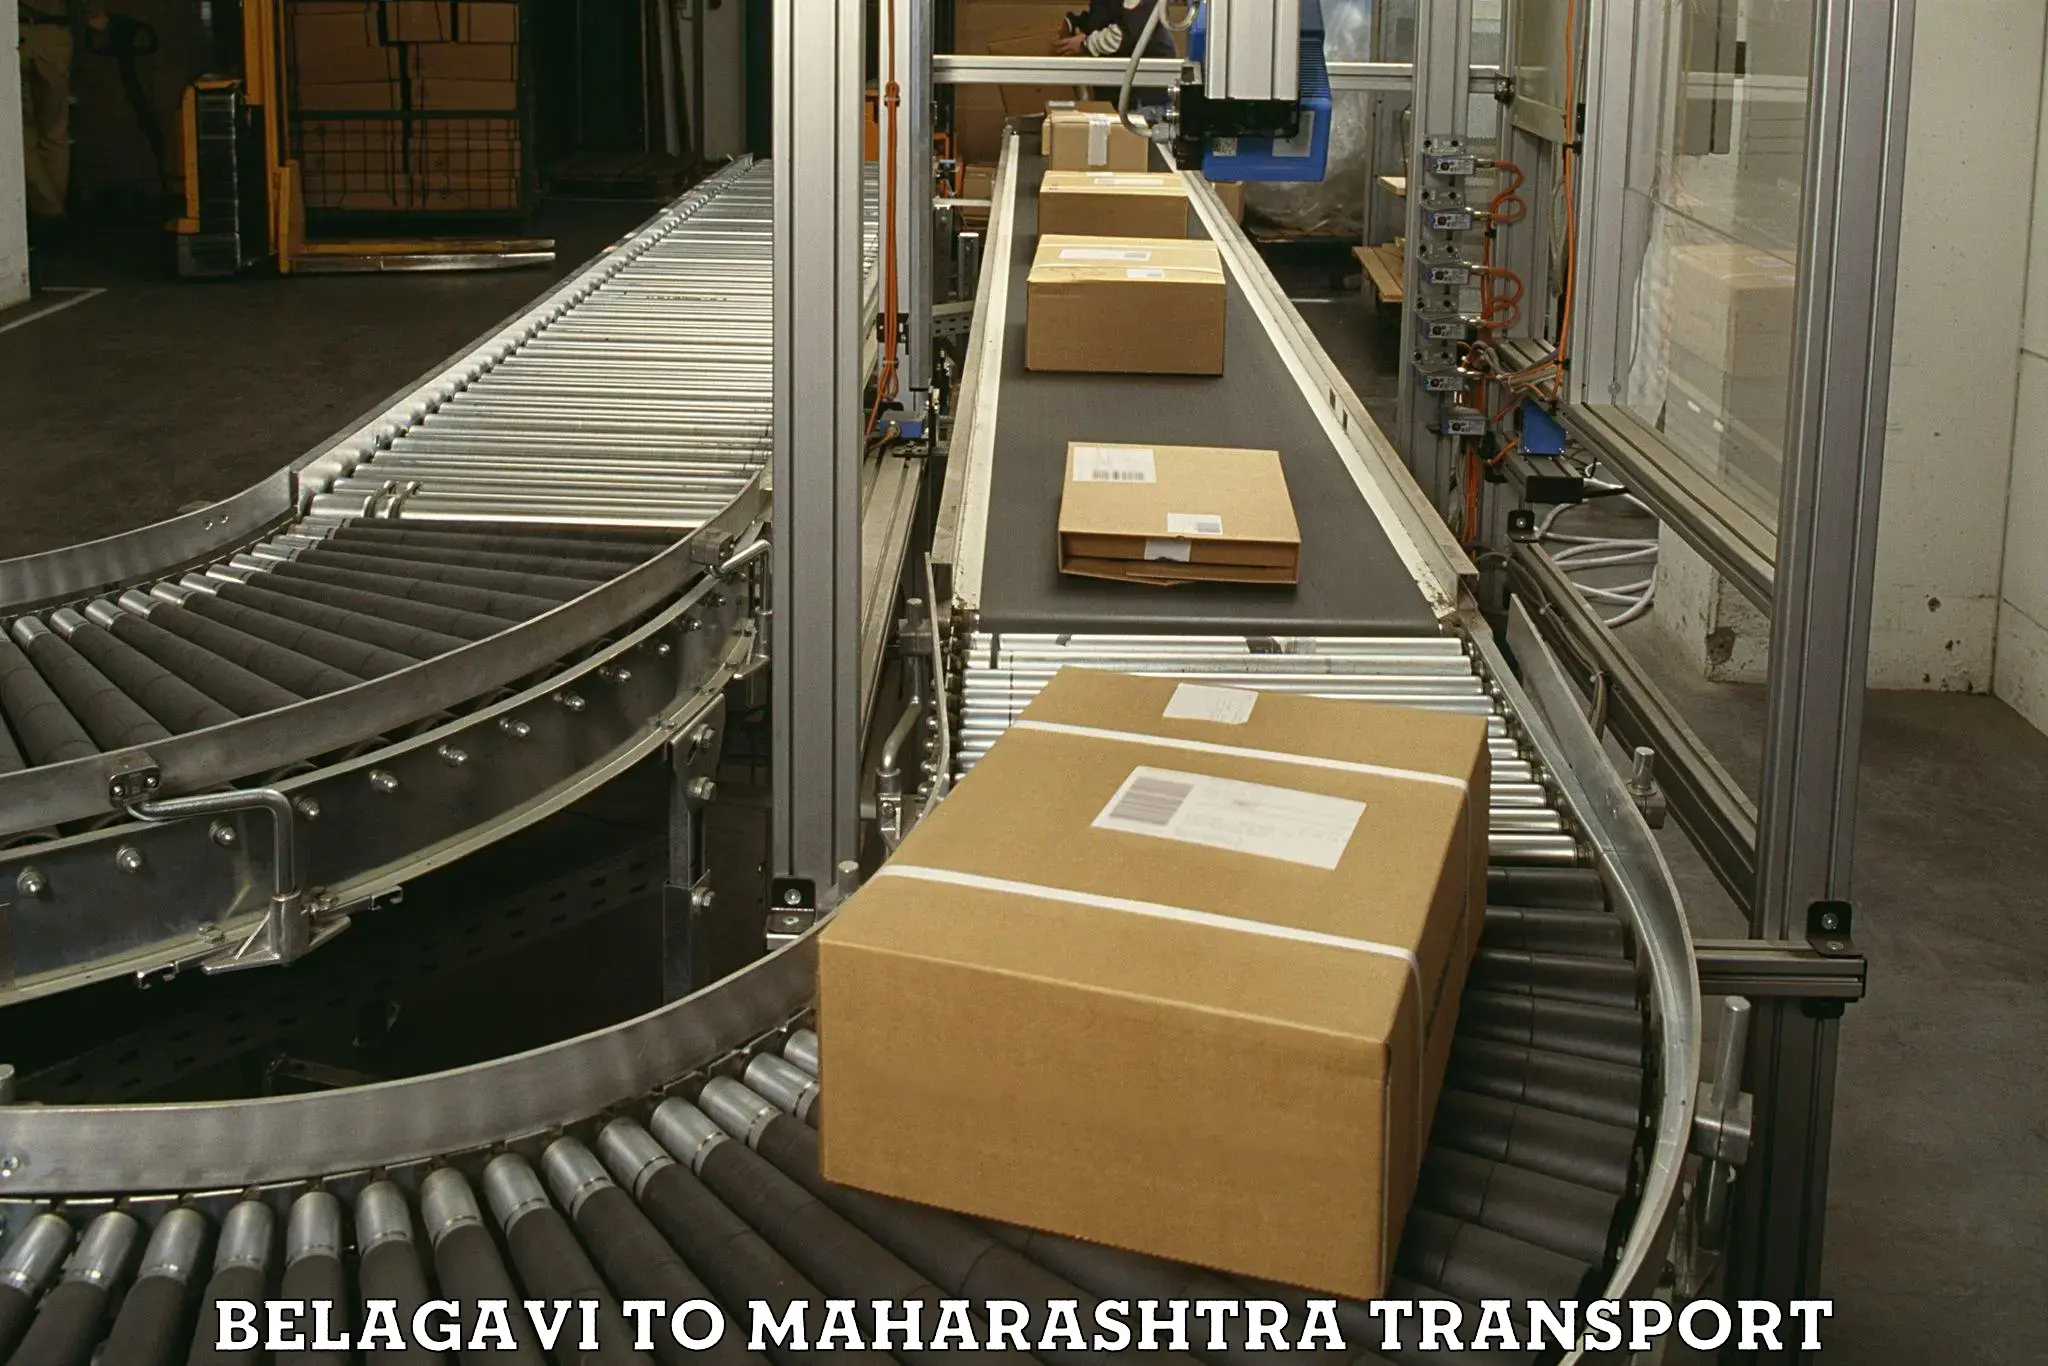 Nearby transport service Belagavi to Maharashtra